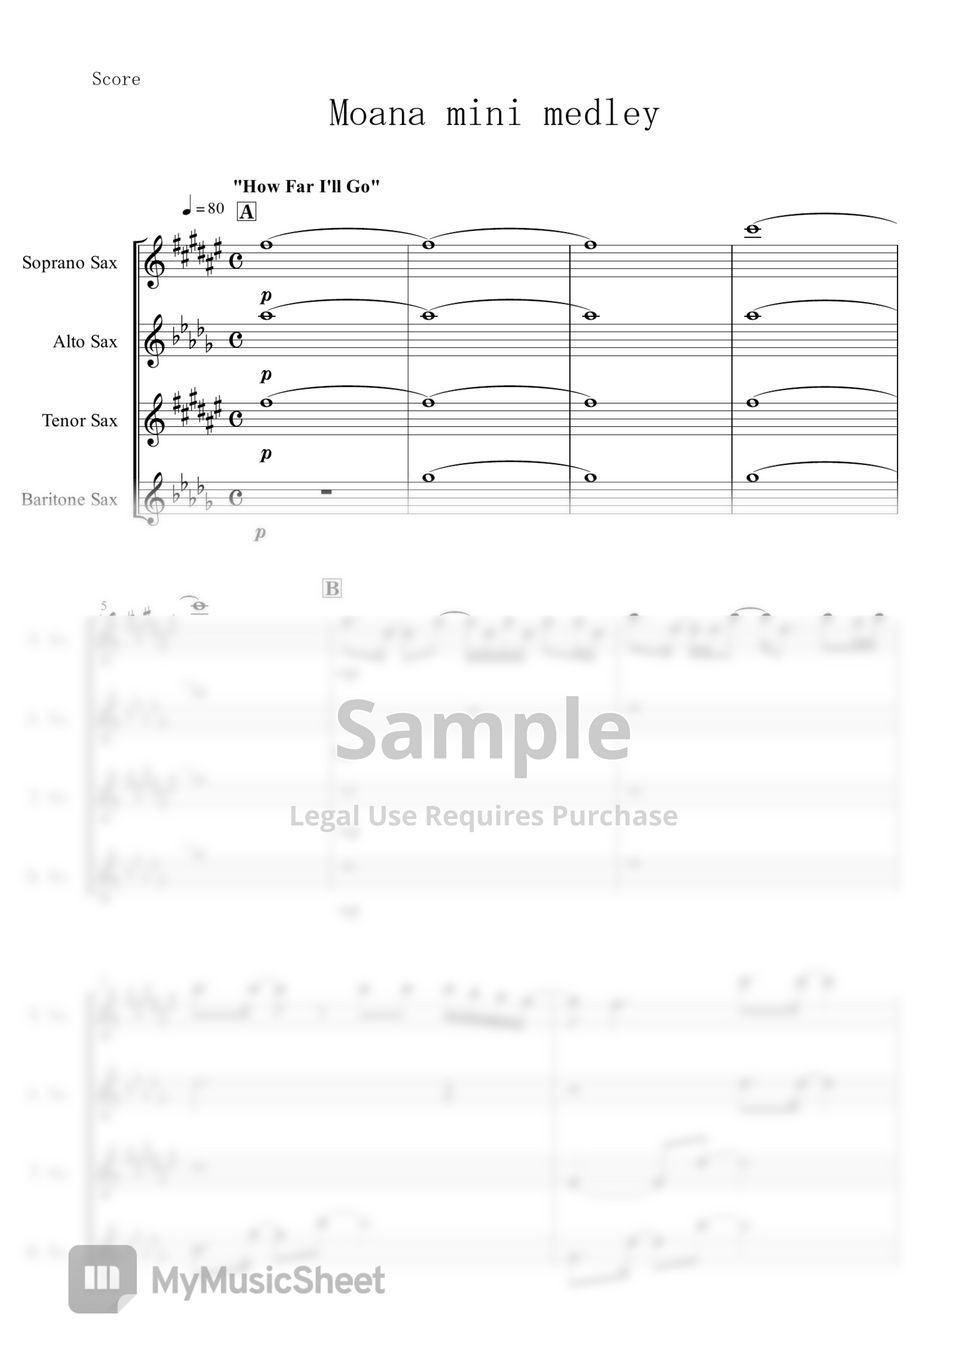 Moana - Mini Medley (Sax Quartet) by muta-sax